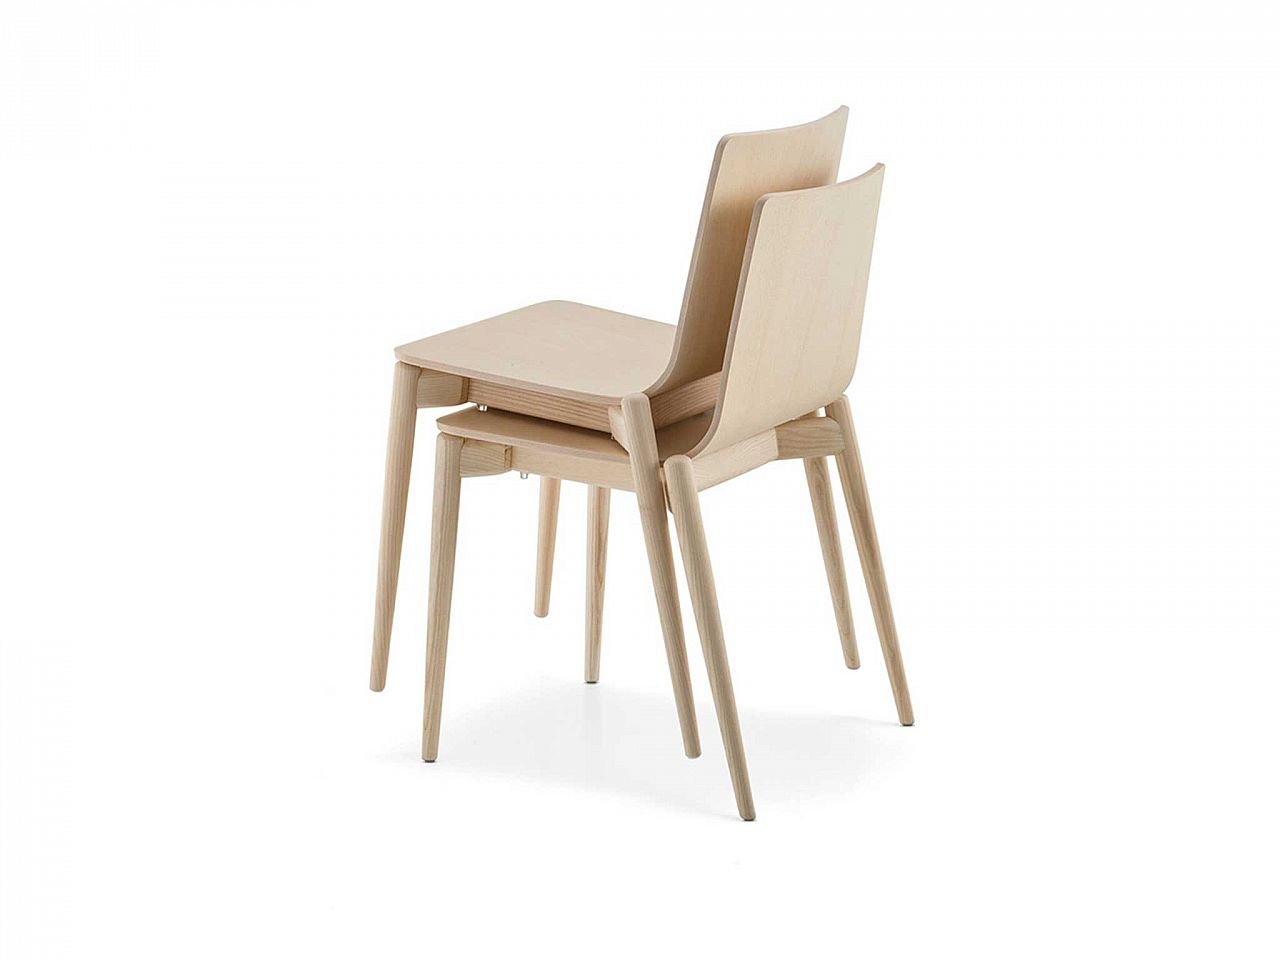 Sedia design in legno, impilabile, minimale, per Albergo